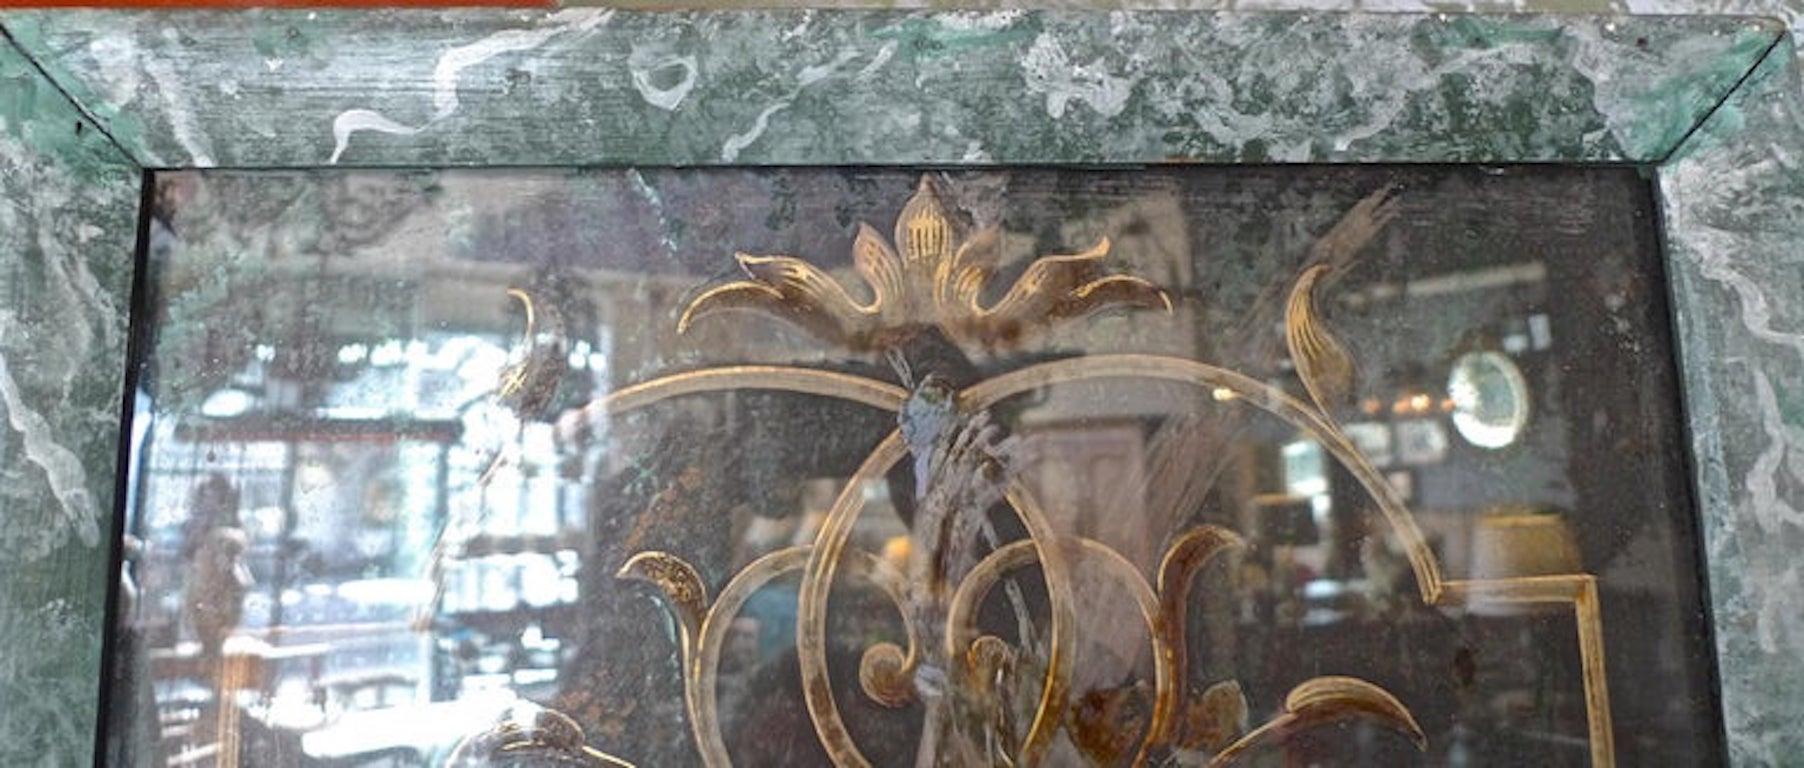 Tableau encadré en bois, peint à la main en faux marbre, datant du 19e siècle. Le verre est à la fois fissuré et rayé. Vendu tel quel.
 